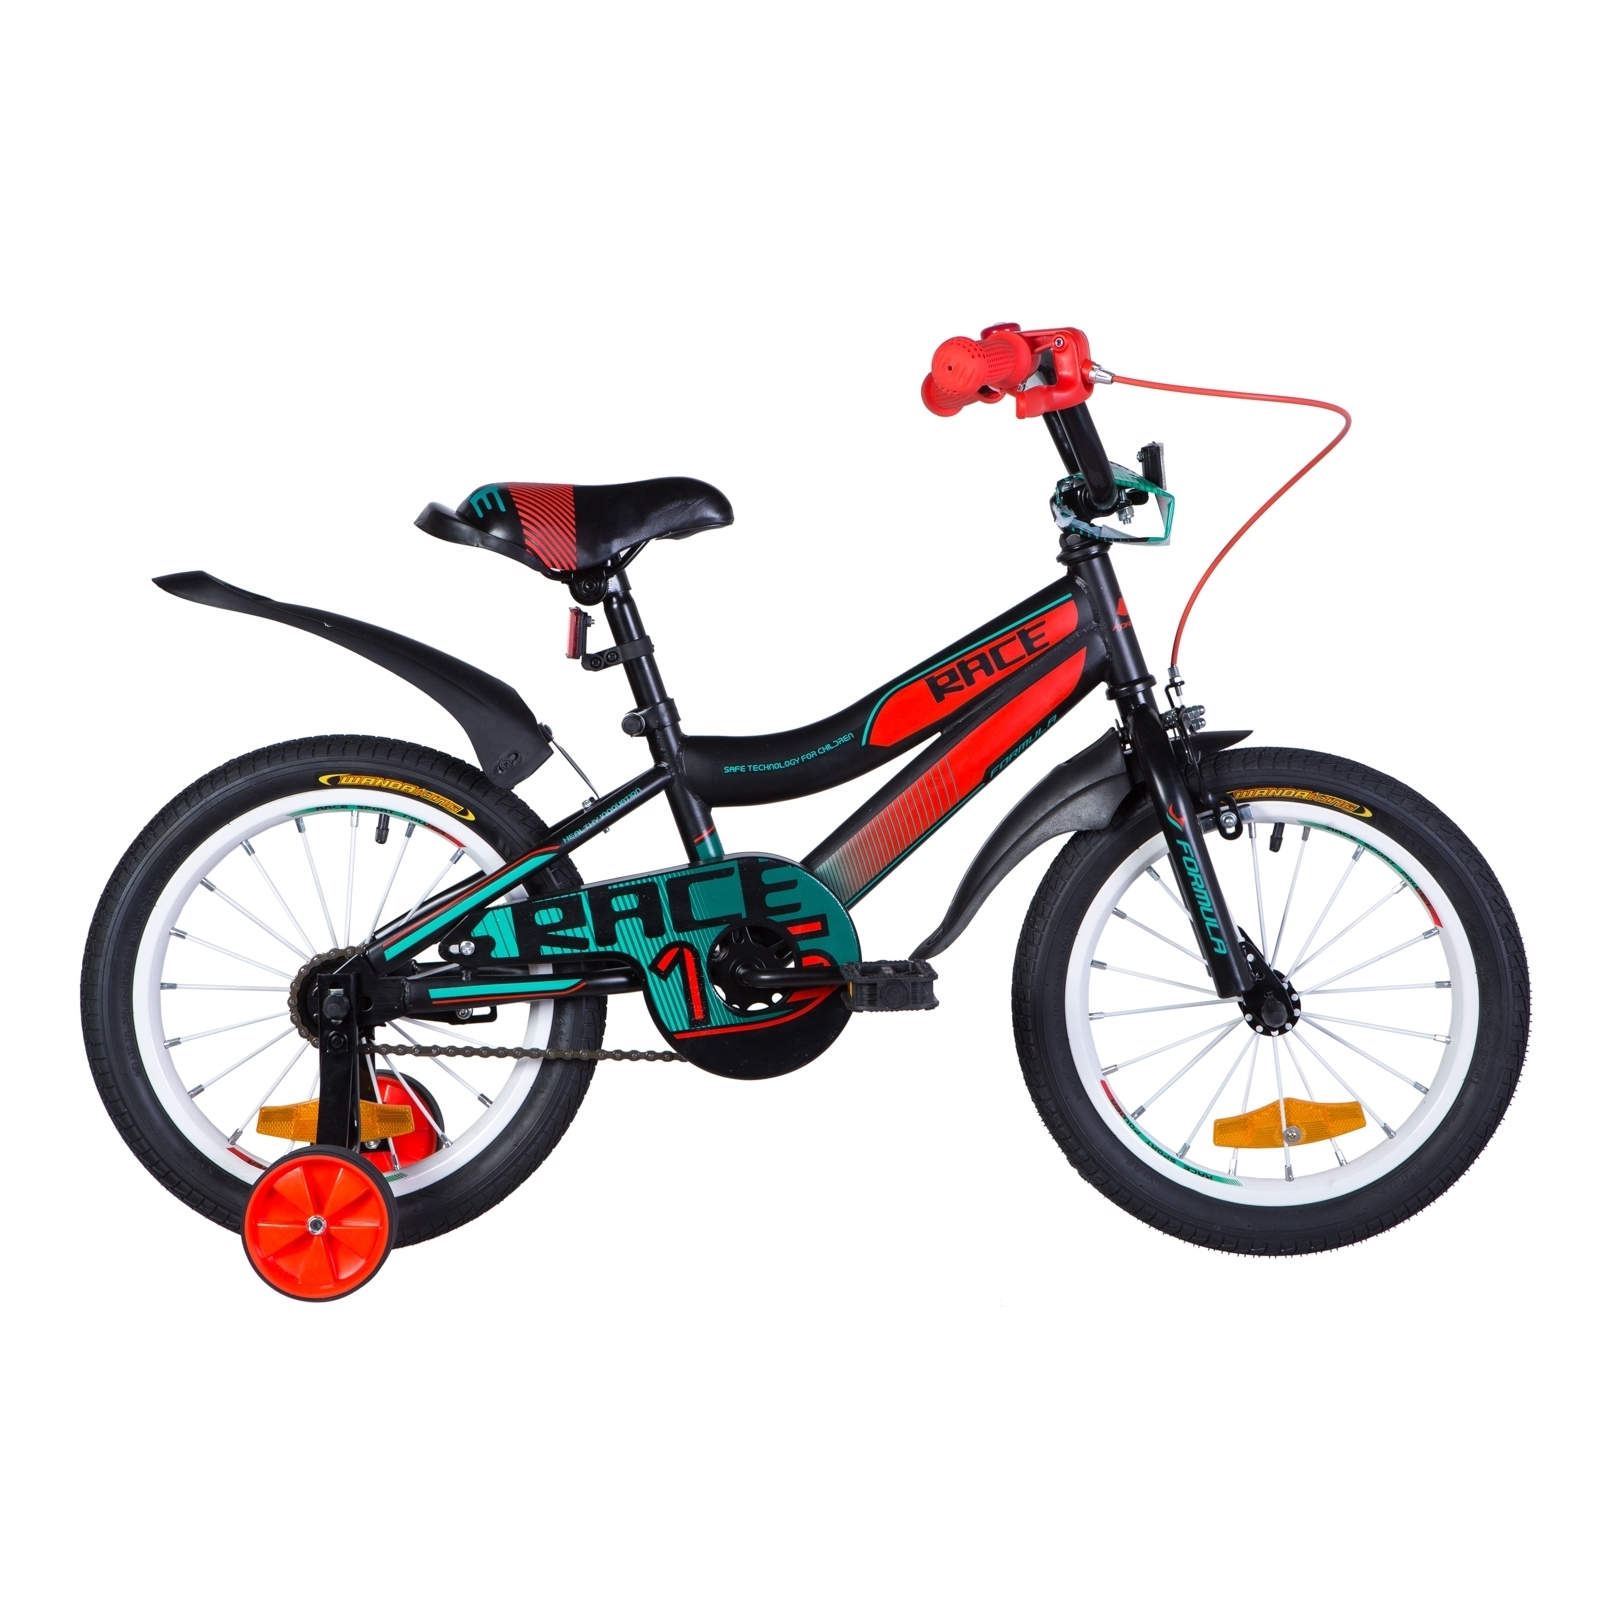 Дитячий велосипед Formula 16" RACE рама-9" St 2020 черно-оранжевый с бирюзовым (OPS-FRK-16-107)